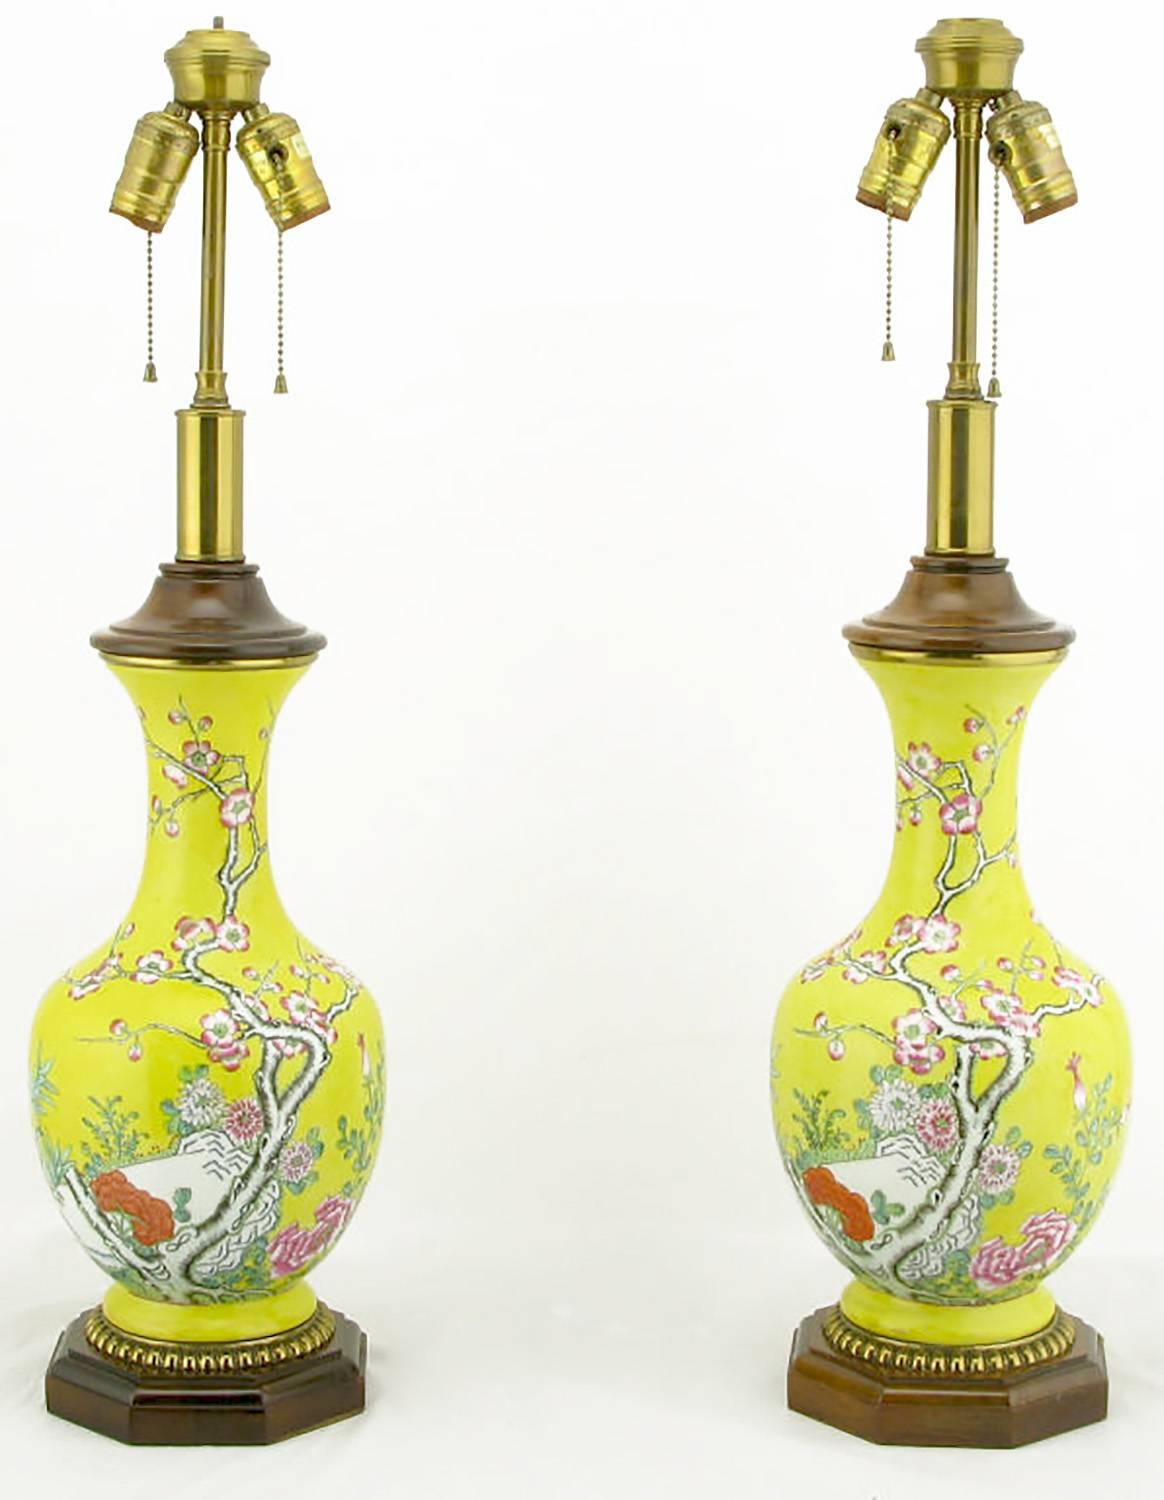 Lampes de table chinoises en forme de vase par Paul Hanson. Les corps sont composés d'un vase en céramique émaillée jaune vif avec des détails floraux peints à la main. La base est en bois sculpté, avec des détails en forme d'œufs dorés. Le CAP est